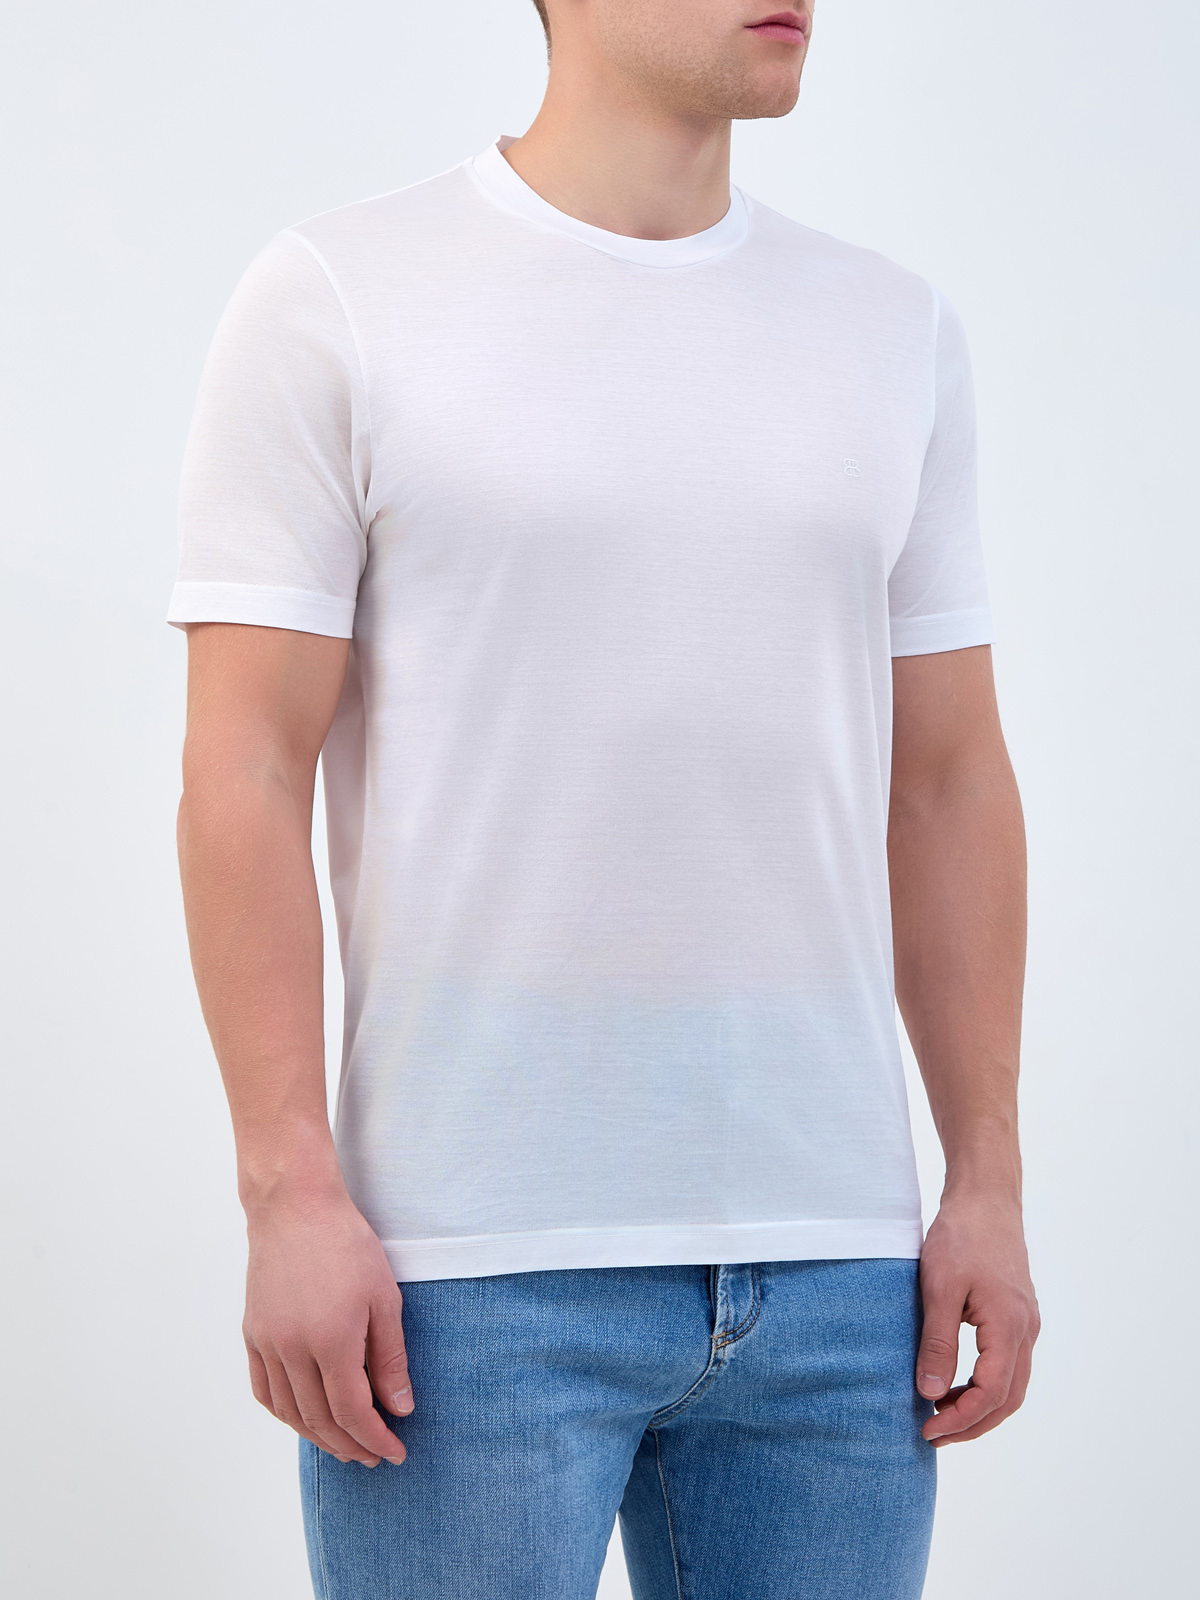 Базовая футболка из хлопка с вышитым логотипом в тон BERTOLO, цвет белый, размер 48;50;52;54;56 - фото 3